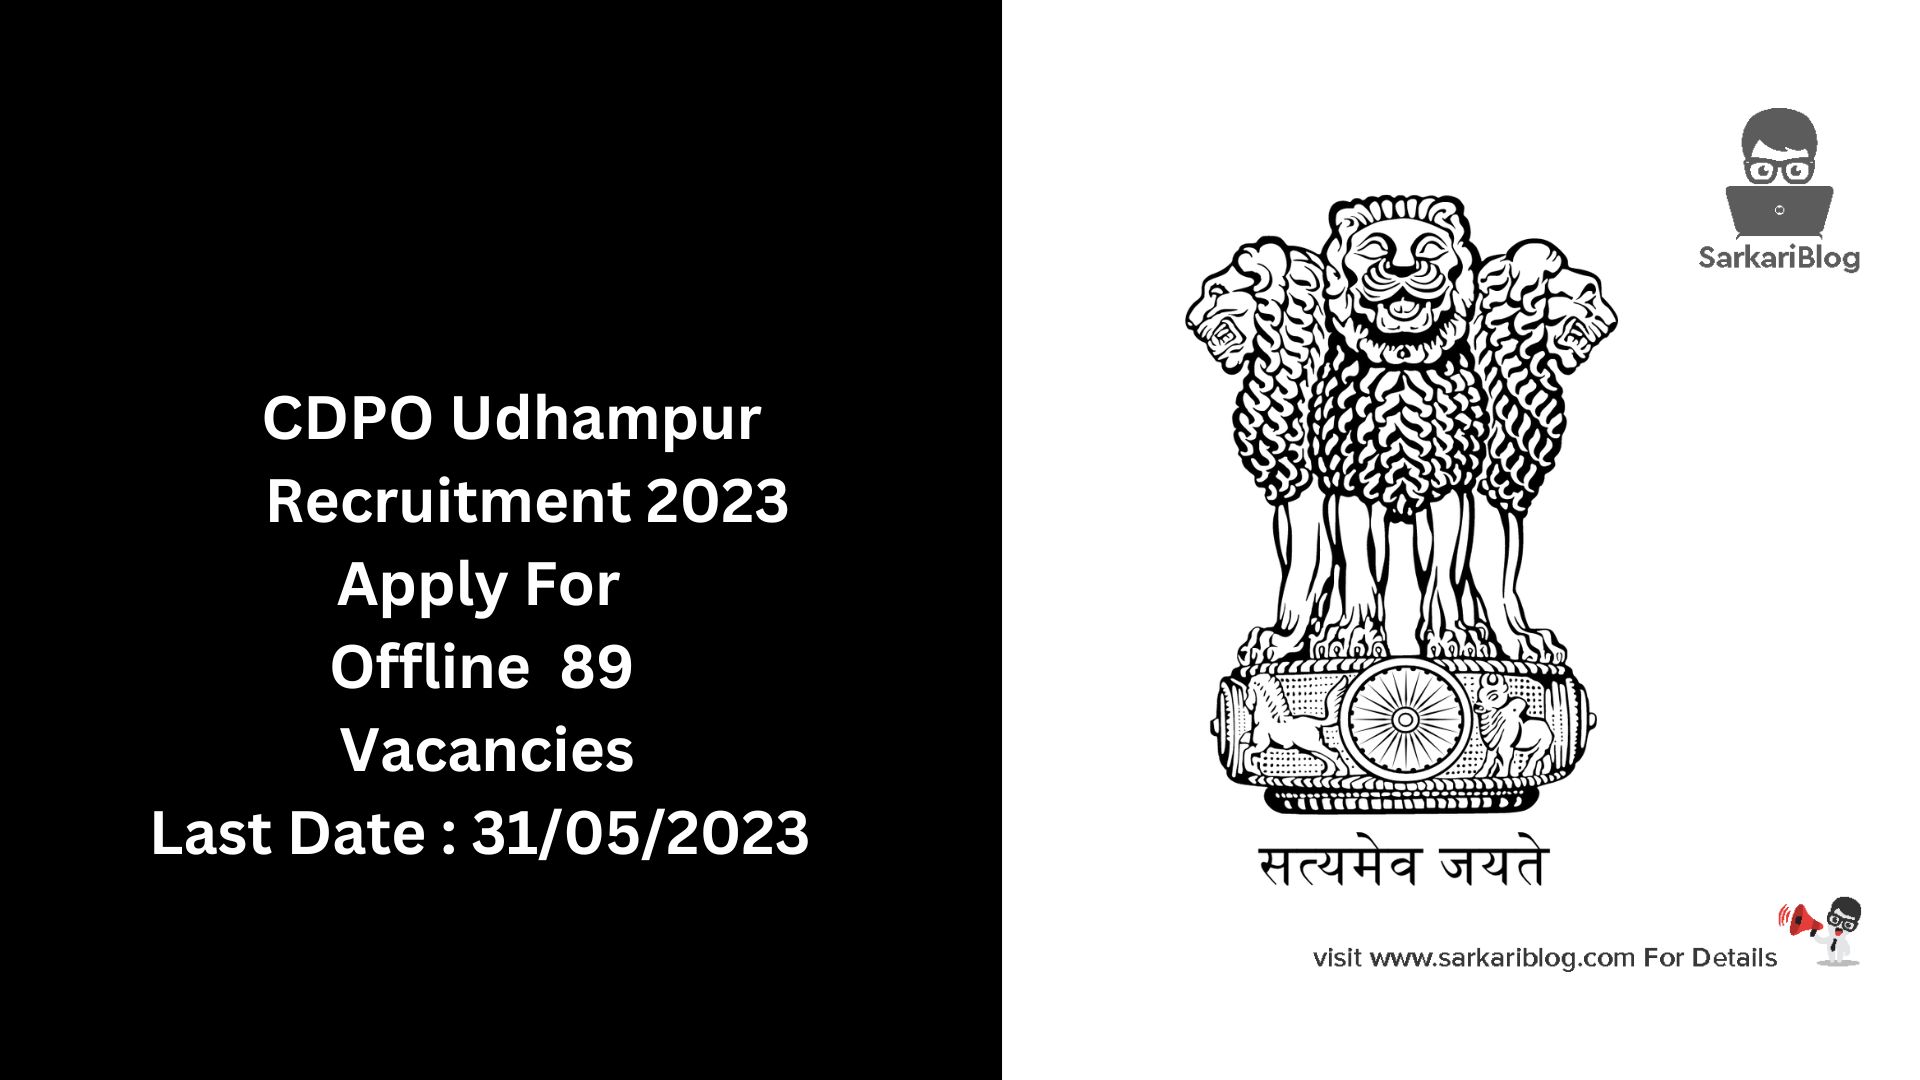 CDPO Udhampur Recruitment 2023